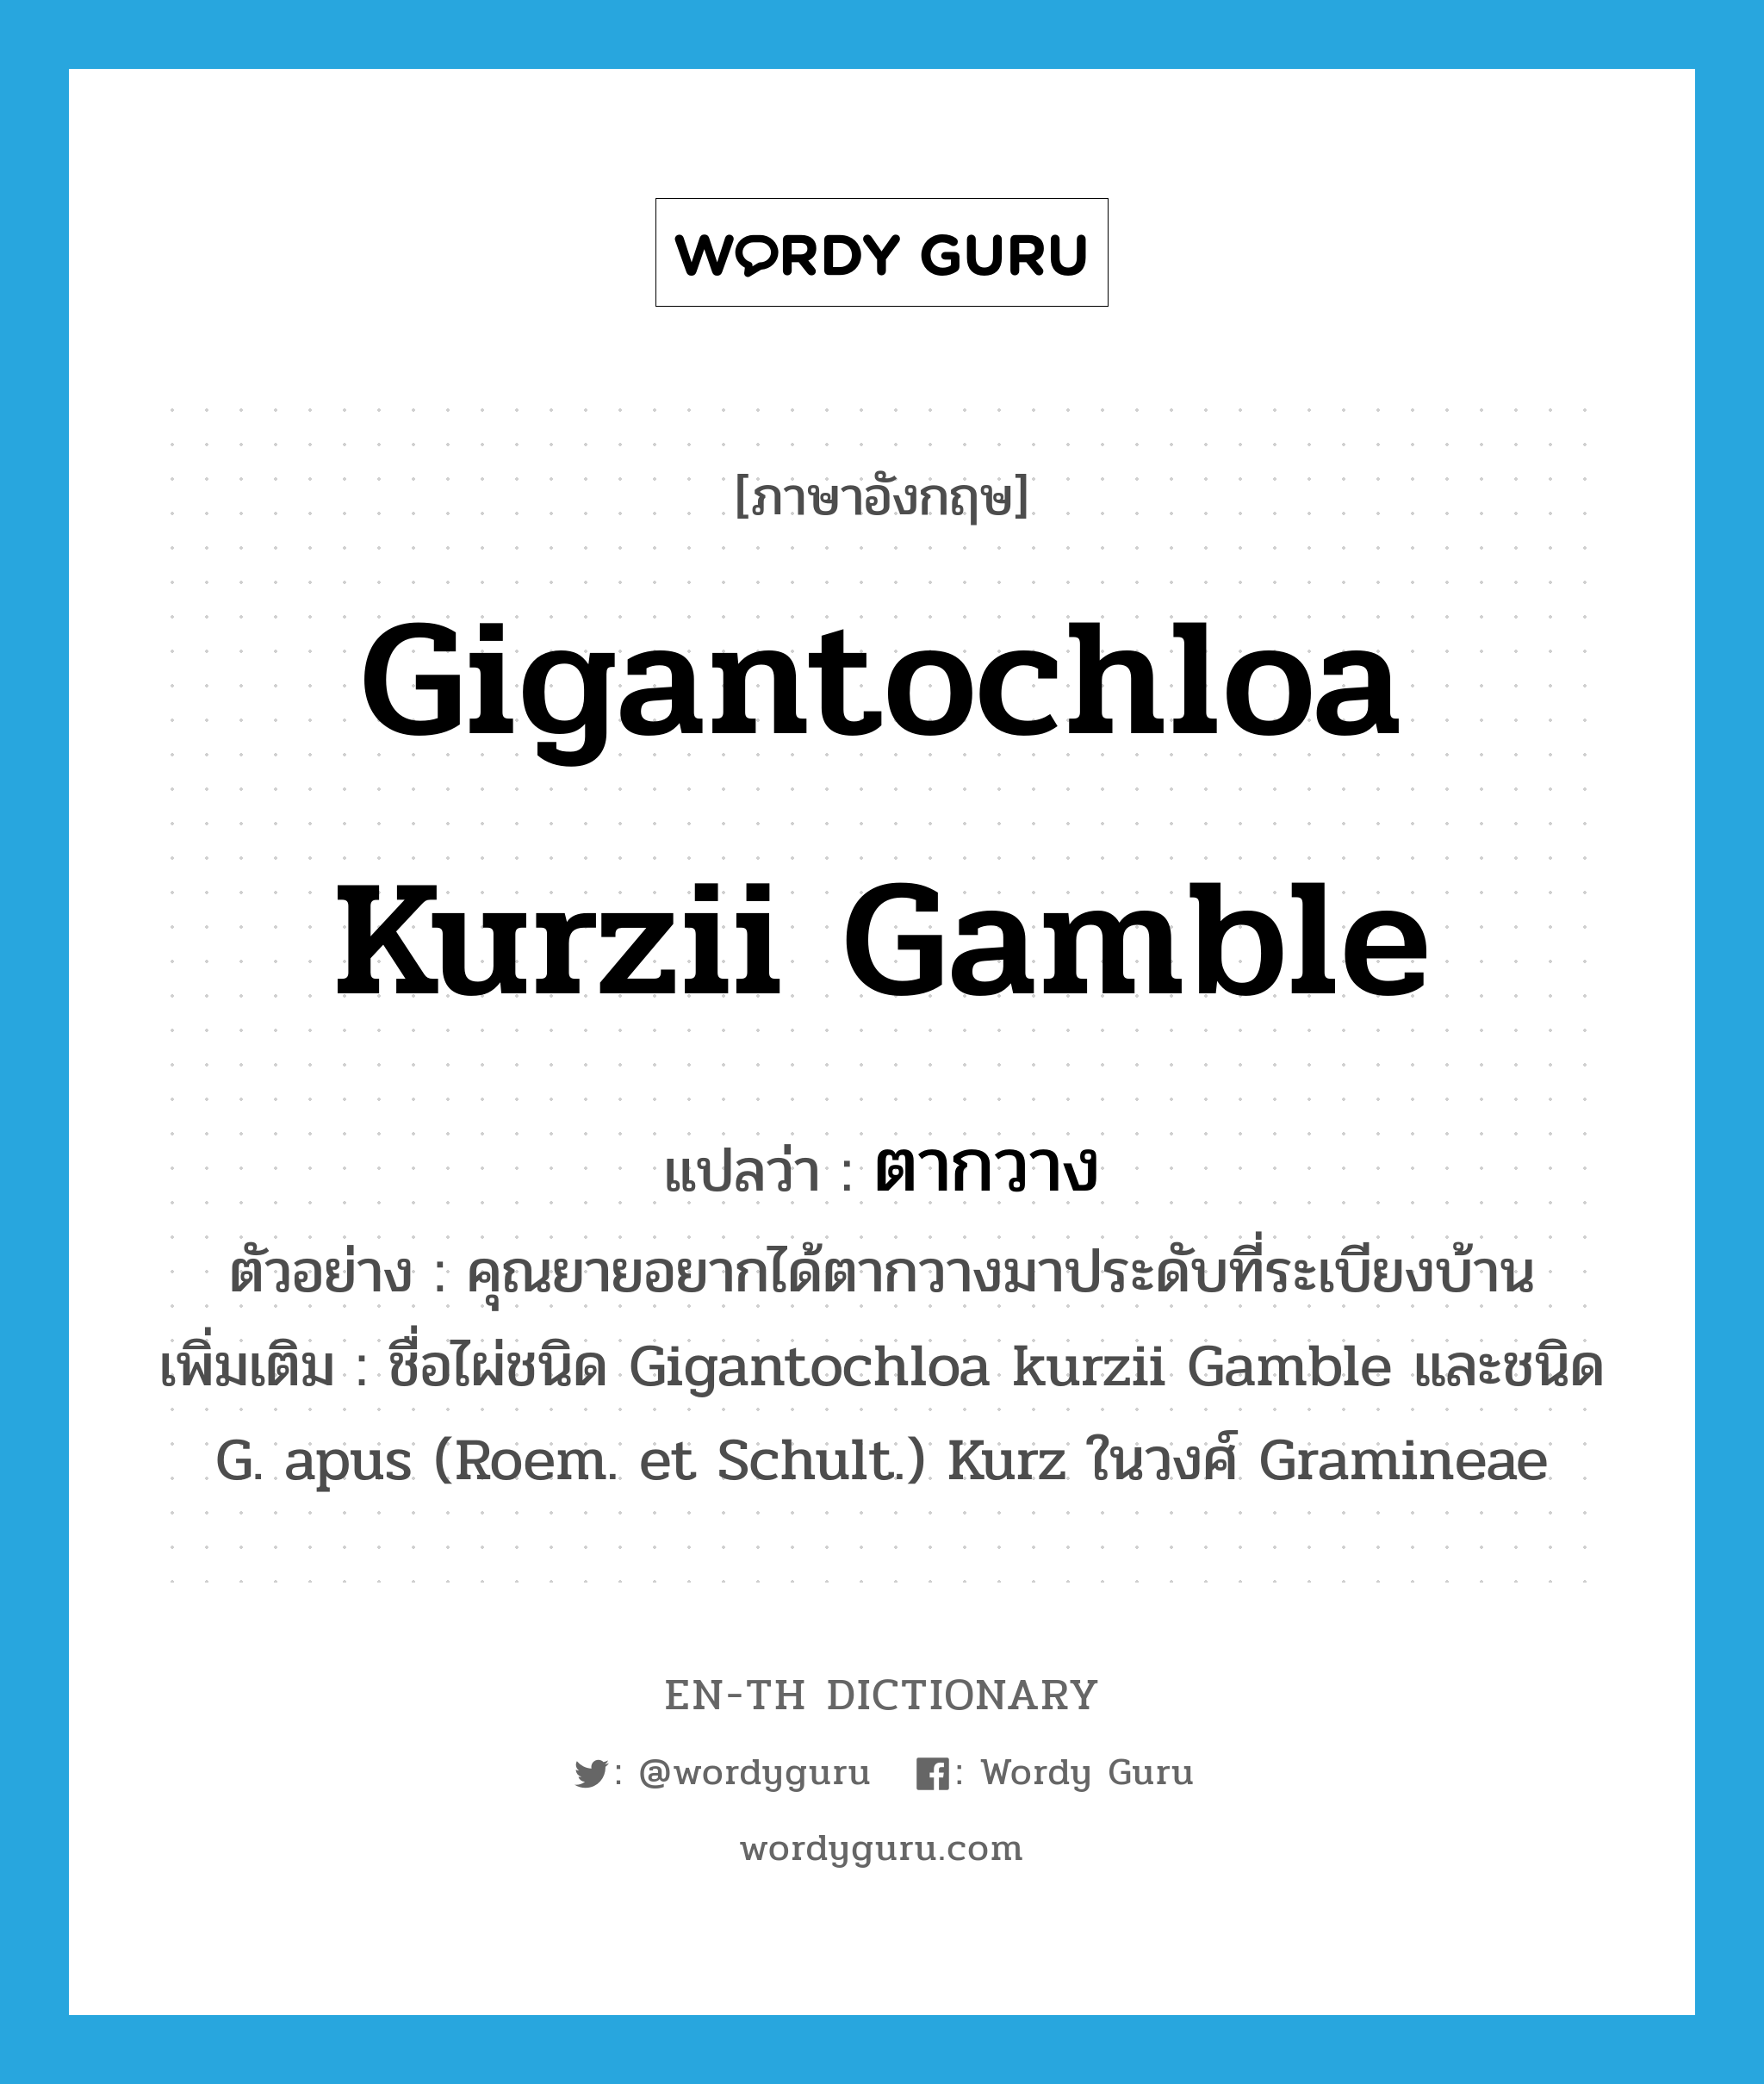 Gigantochloa kurzii Gamble แปลว่า?, คำศัพท์ภาษาอังกฤษ Gigantochloa kurzii Gamble แปลว่า ตากวาง ประเภท N ตัวอย่าง คุณยายอยากได้ตากวางมาประดับที่ระเบียงบ้าน เพิ่มเติม ชื่อไผ่ชนิด Gigantochloa kurzii Gamble และชนิด G. apus (Roem. et Schult.) Kurz ในวงศ์ Gramineae หมวด N